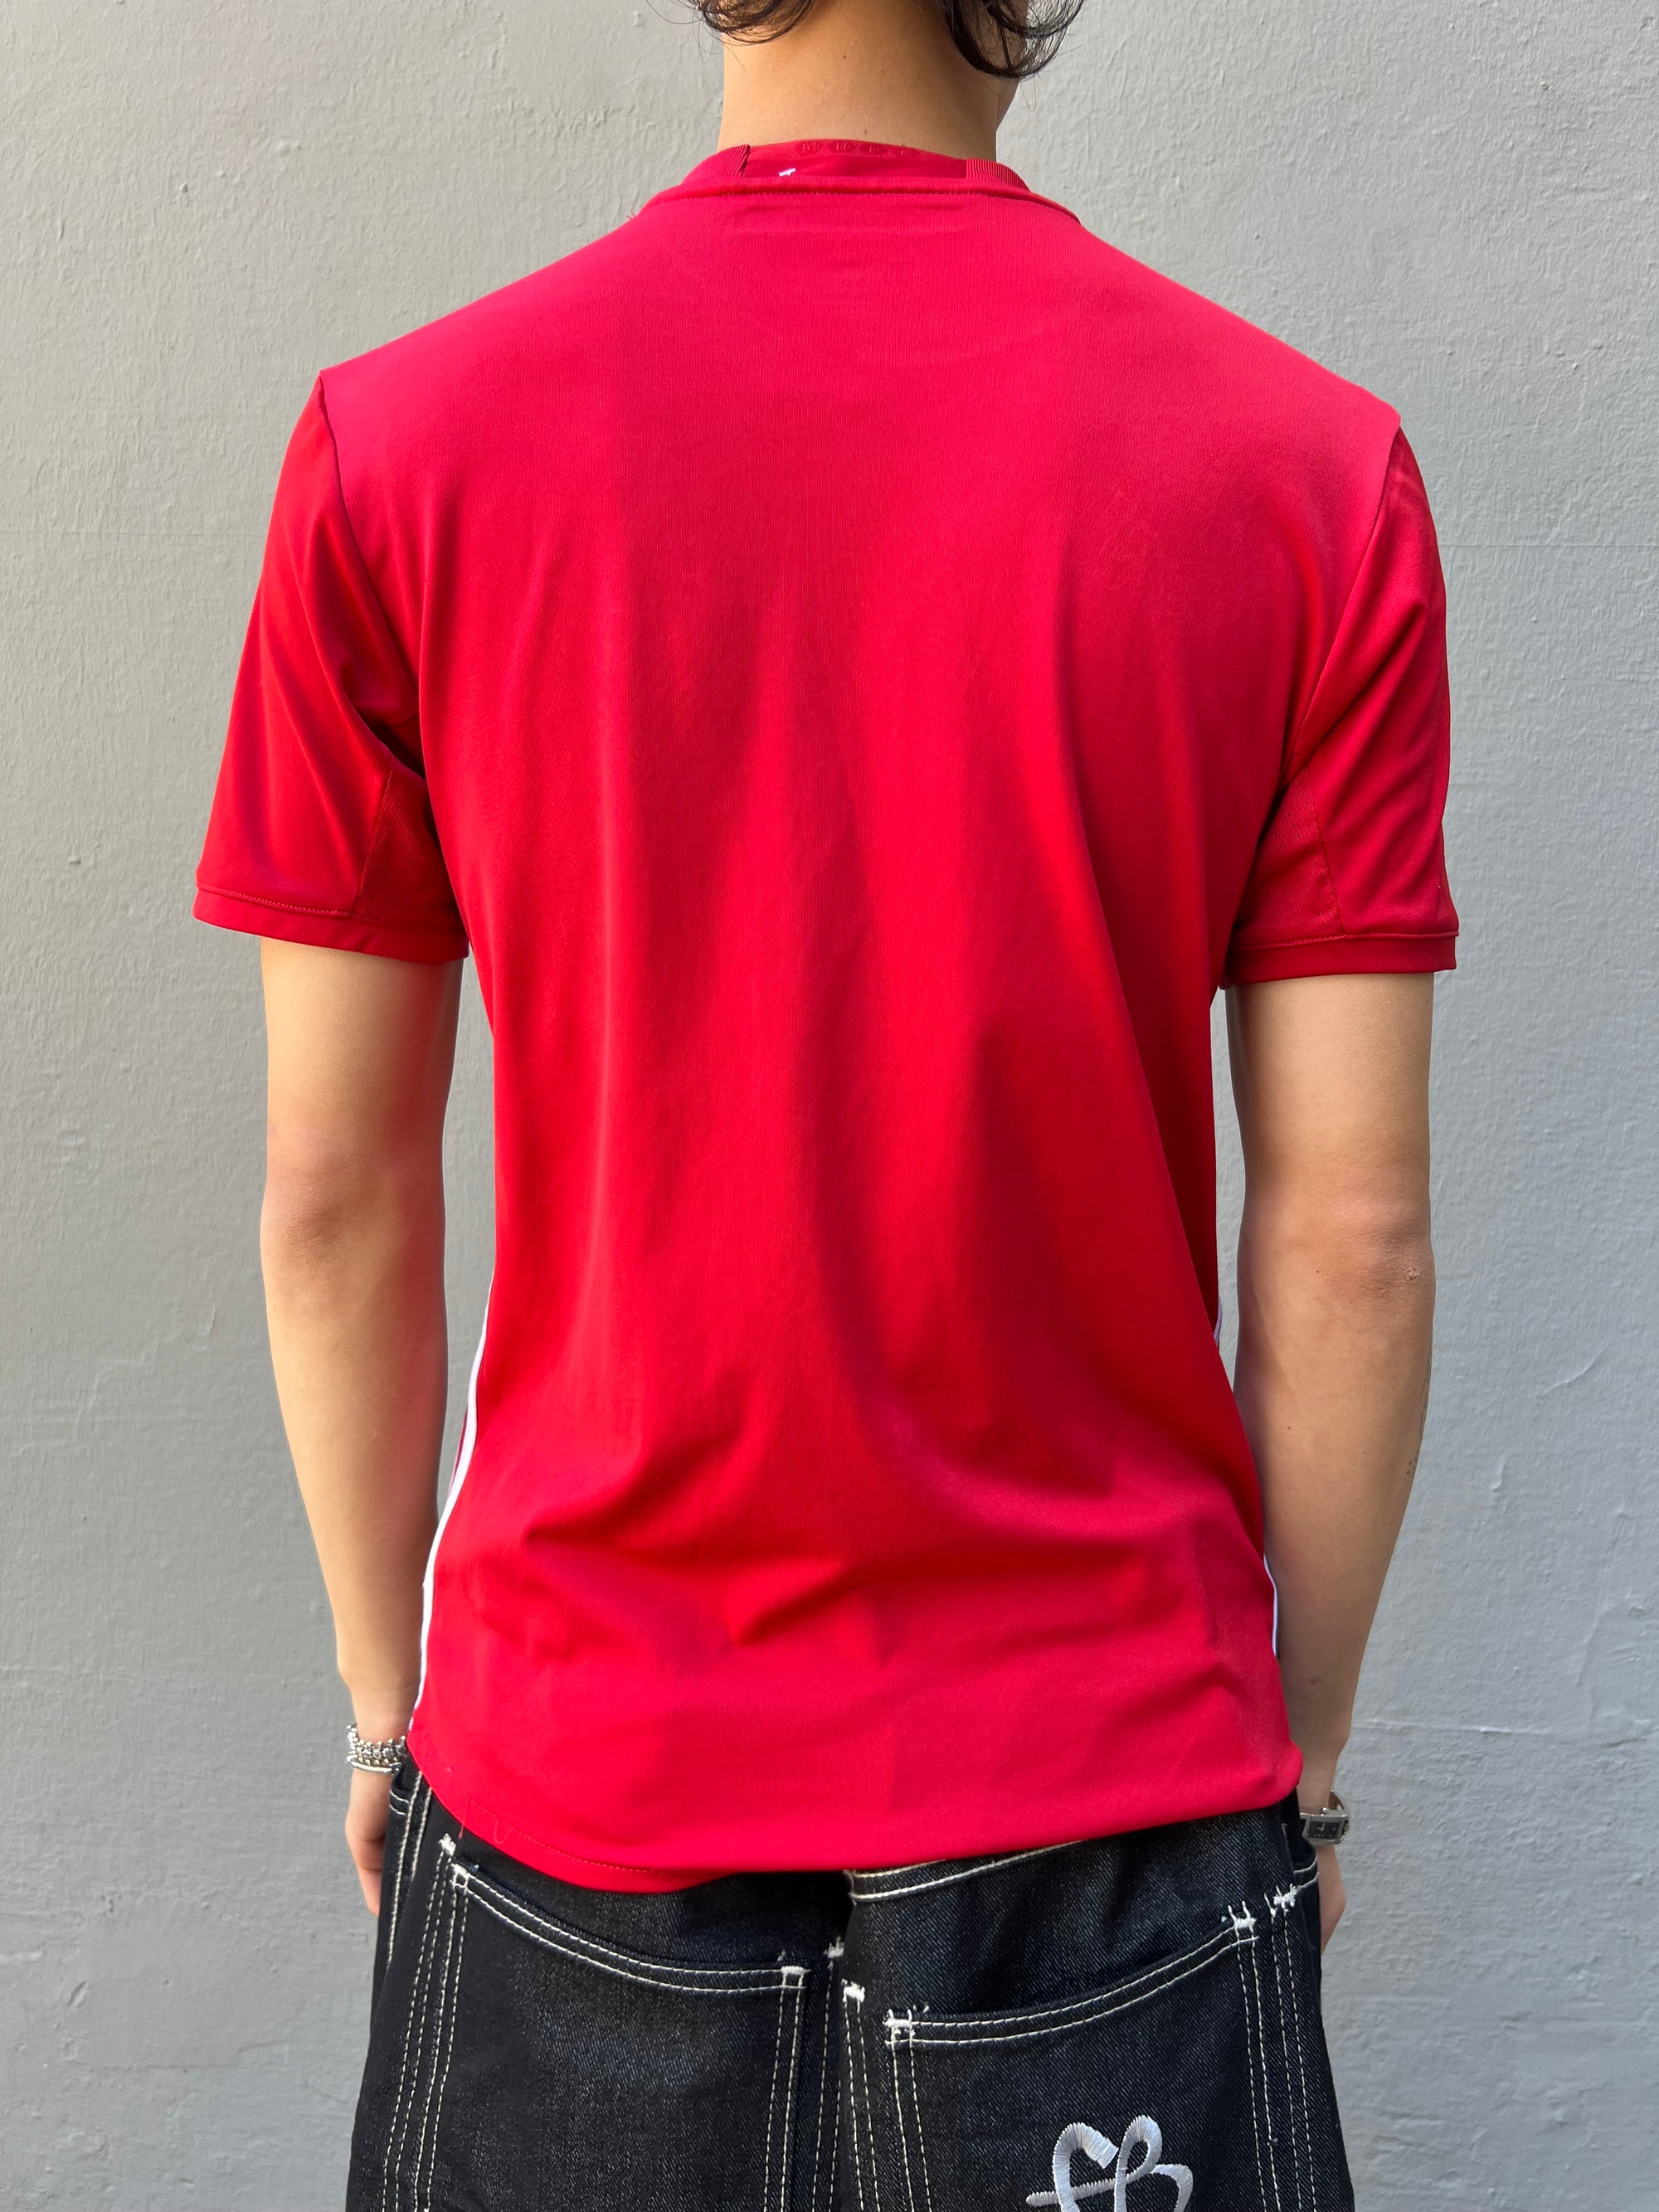 Zu sehen ist ein rotes Vintage Adidas Manchester United Trikot getragen vor einem grauen Hintergrund